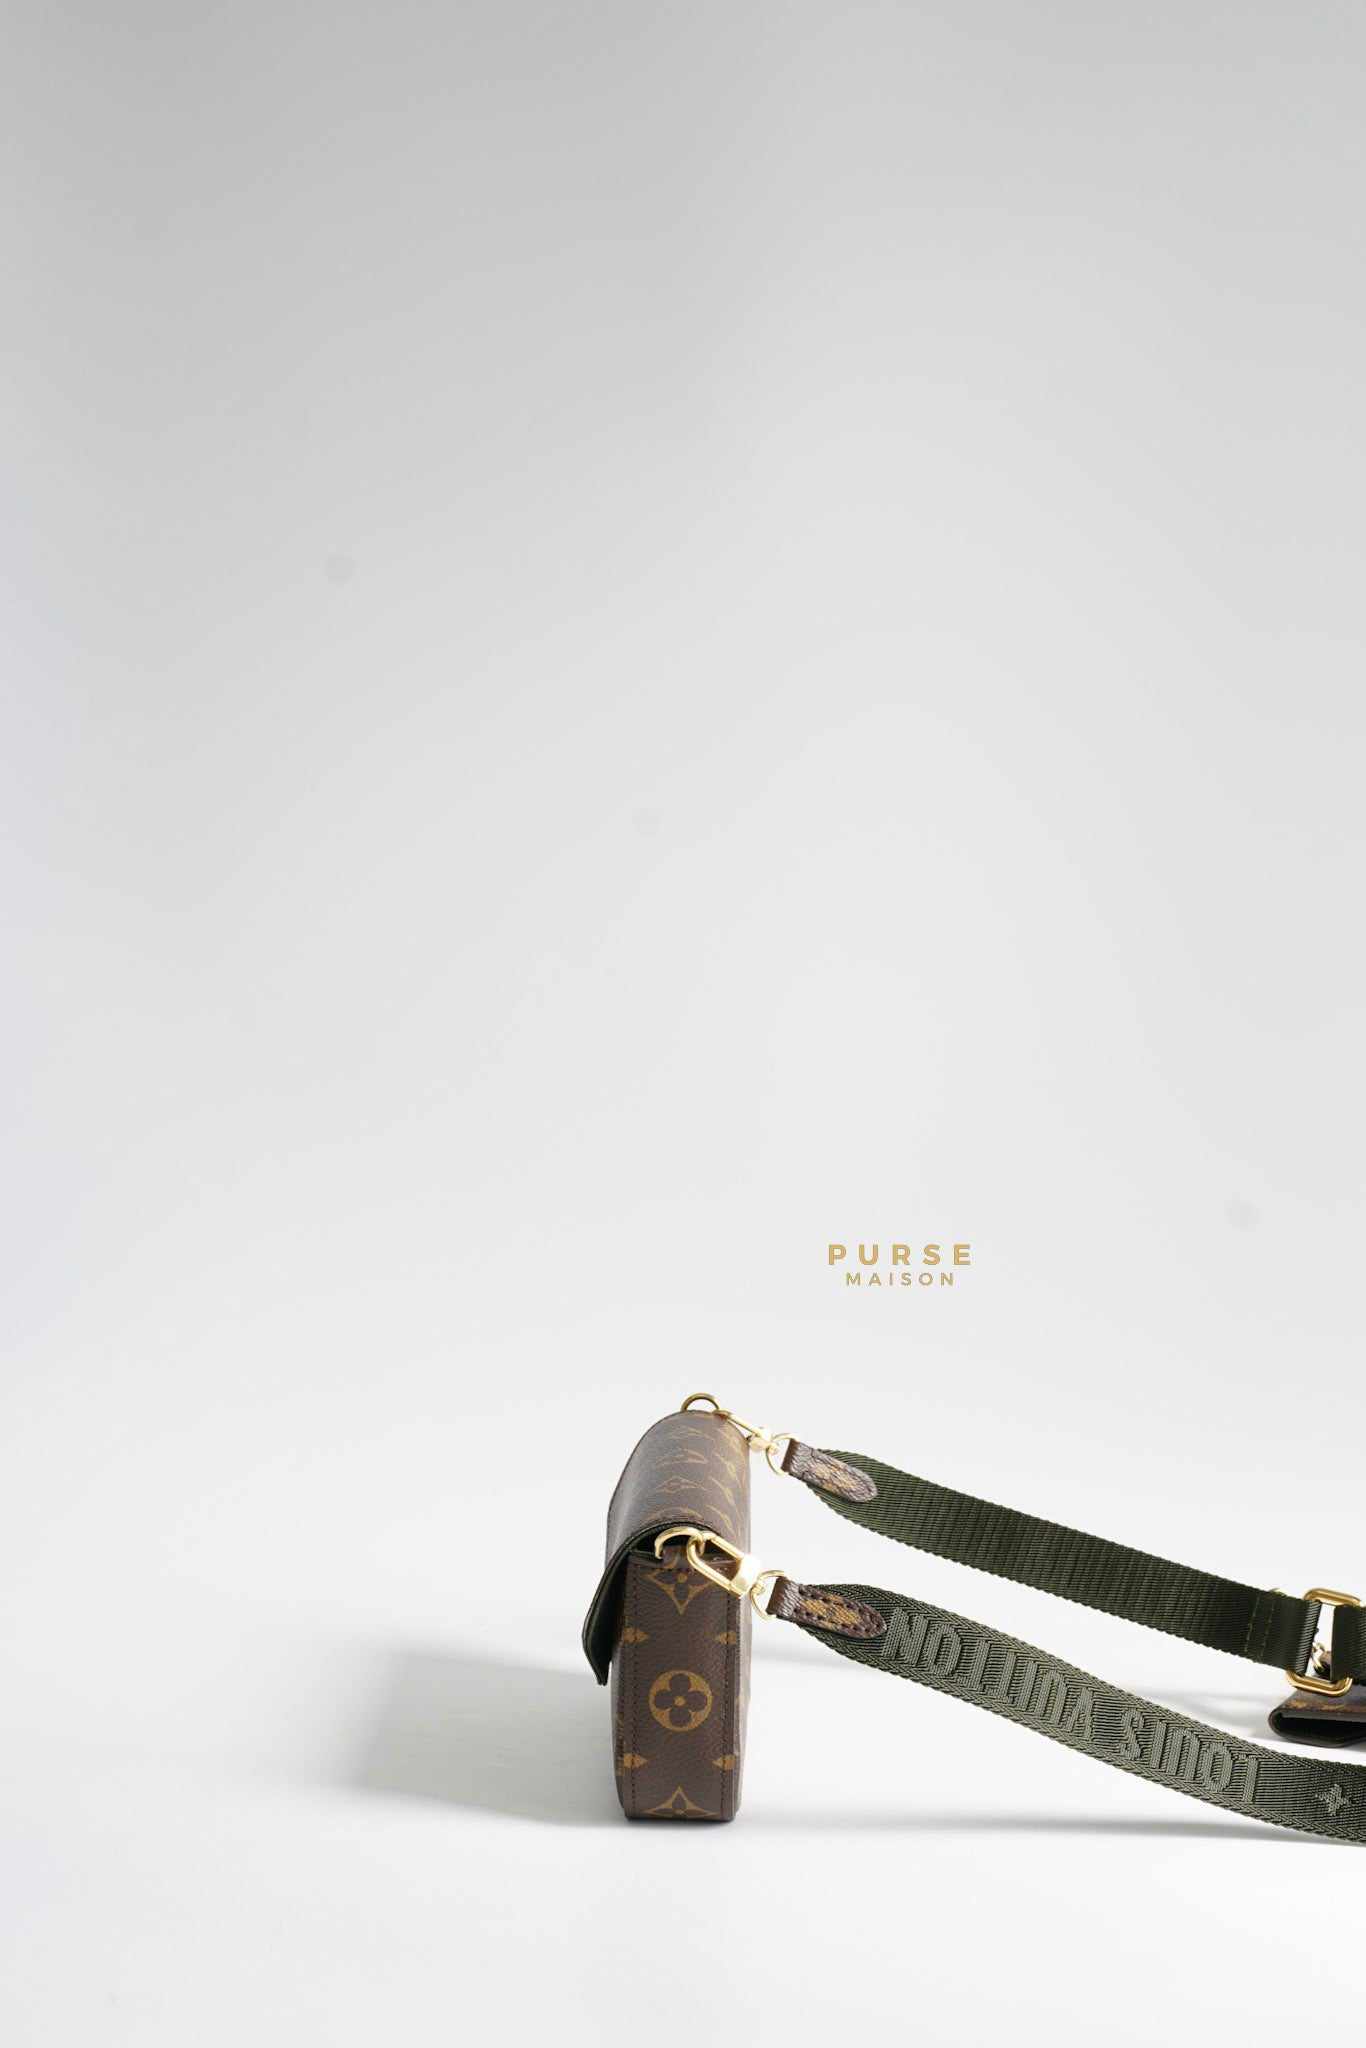 Louis Vuitton Multi Pochette Felicie Strap & Go Monogram (Date Code: MI4240)